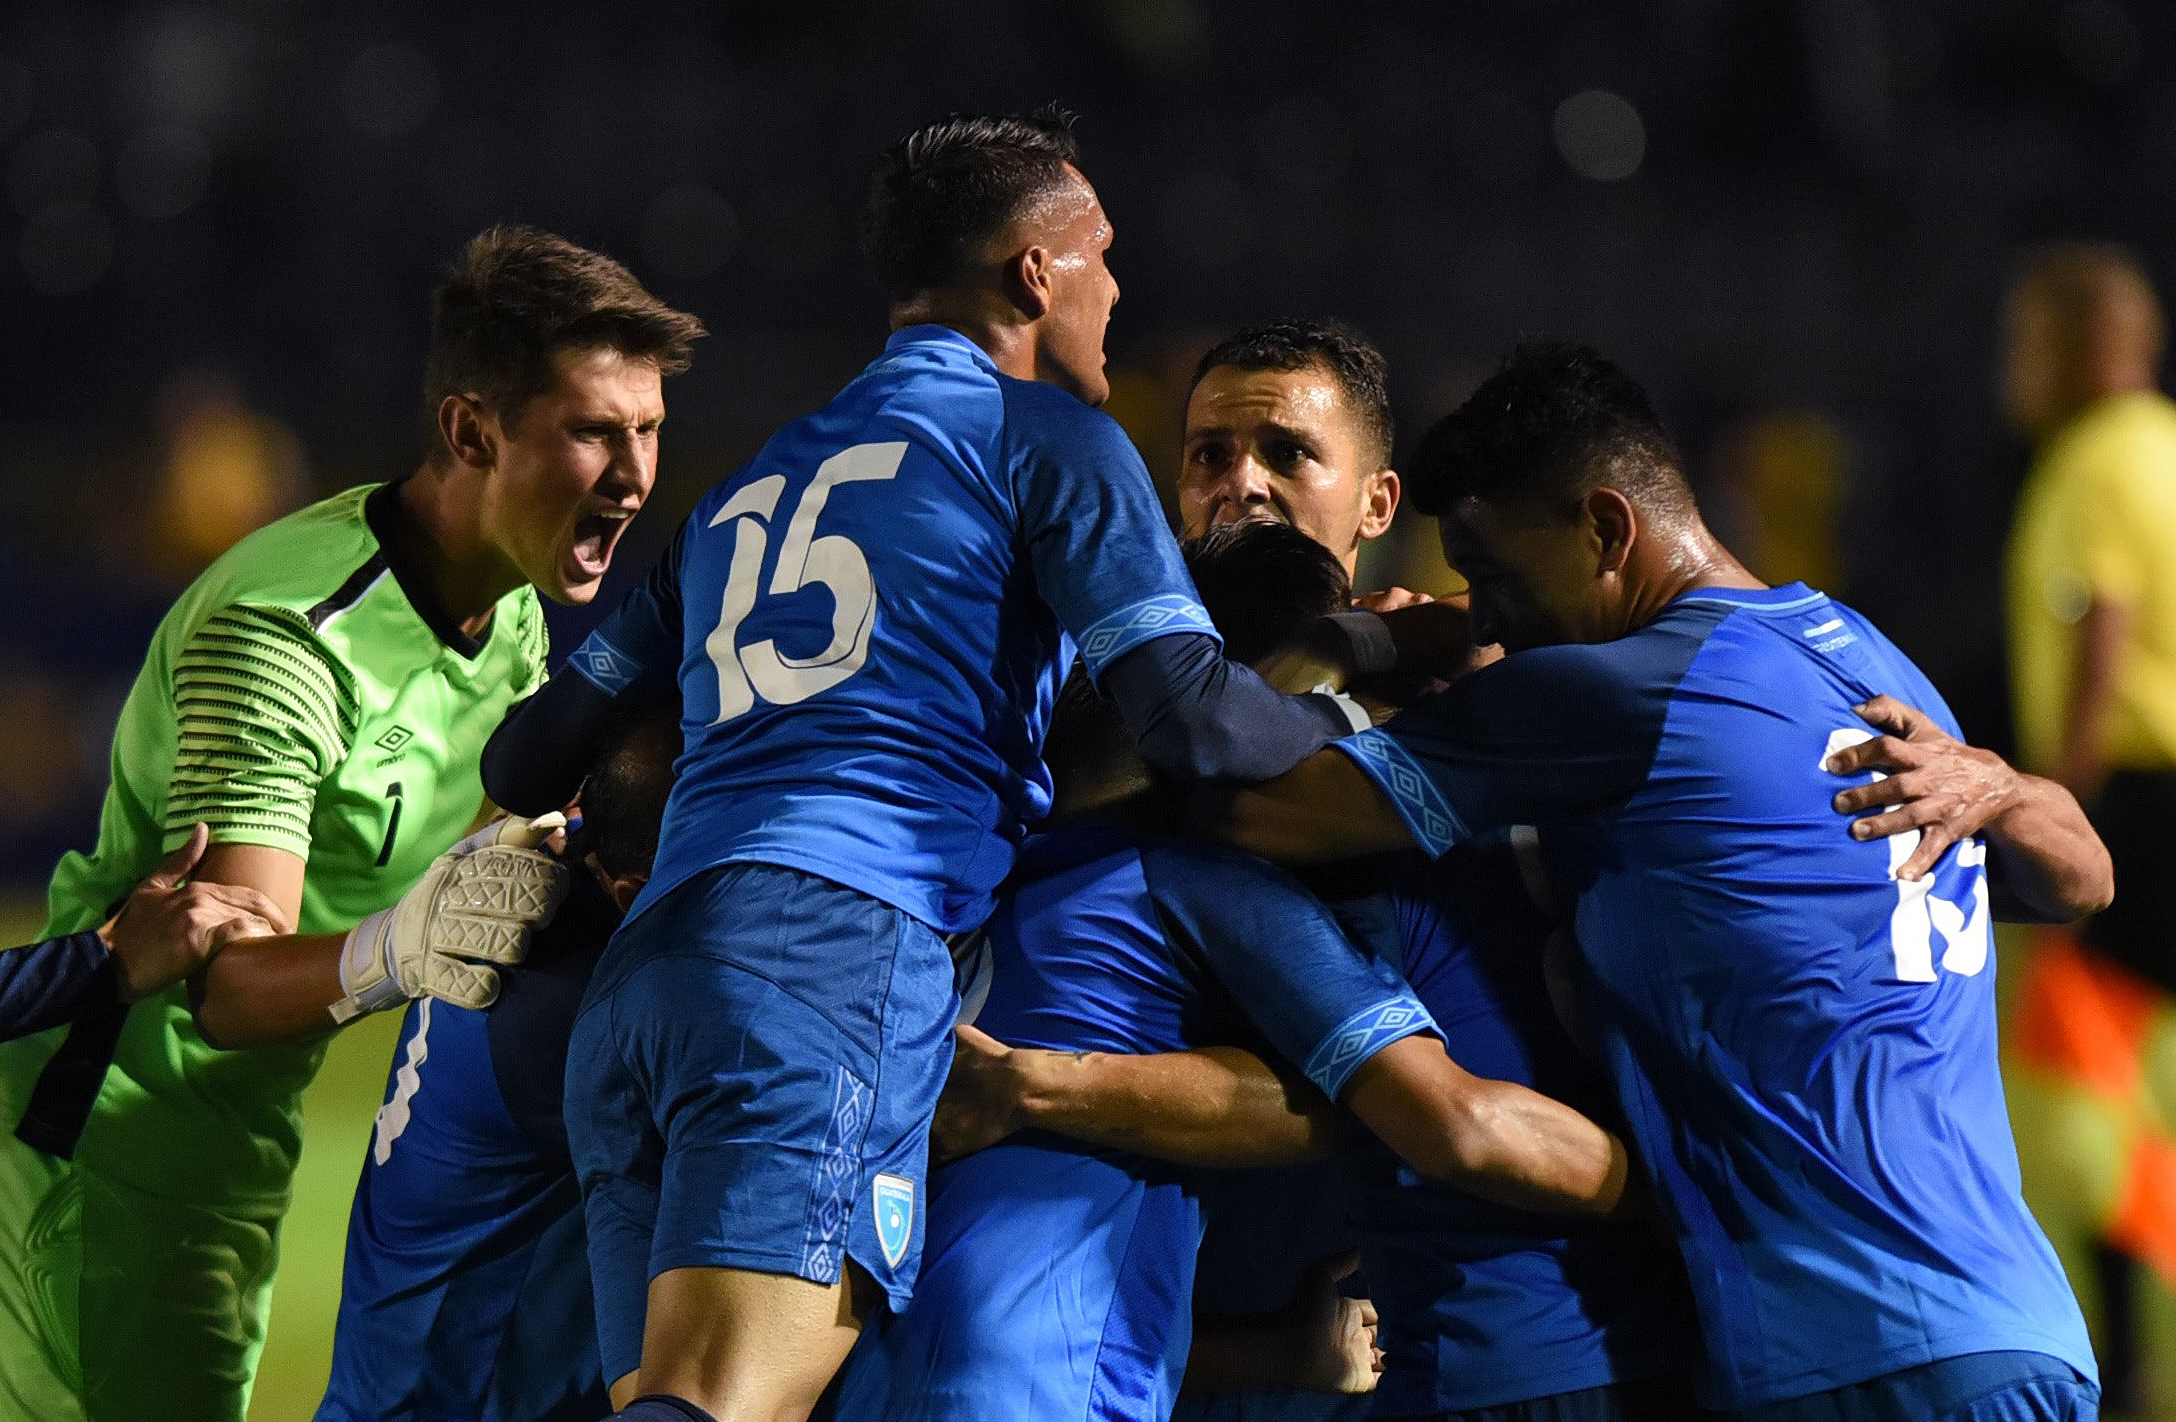 Los seleccionados celebraron al finalizar el partido la victoria en el amistoso contra Costa Rica. (Foto Prensa Libre: AFP)